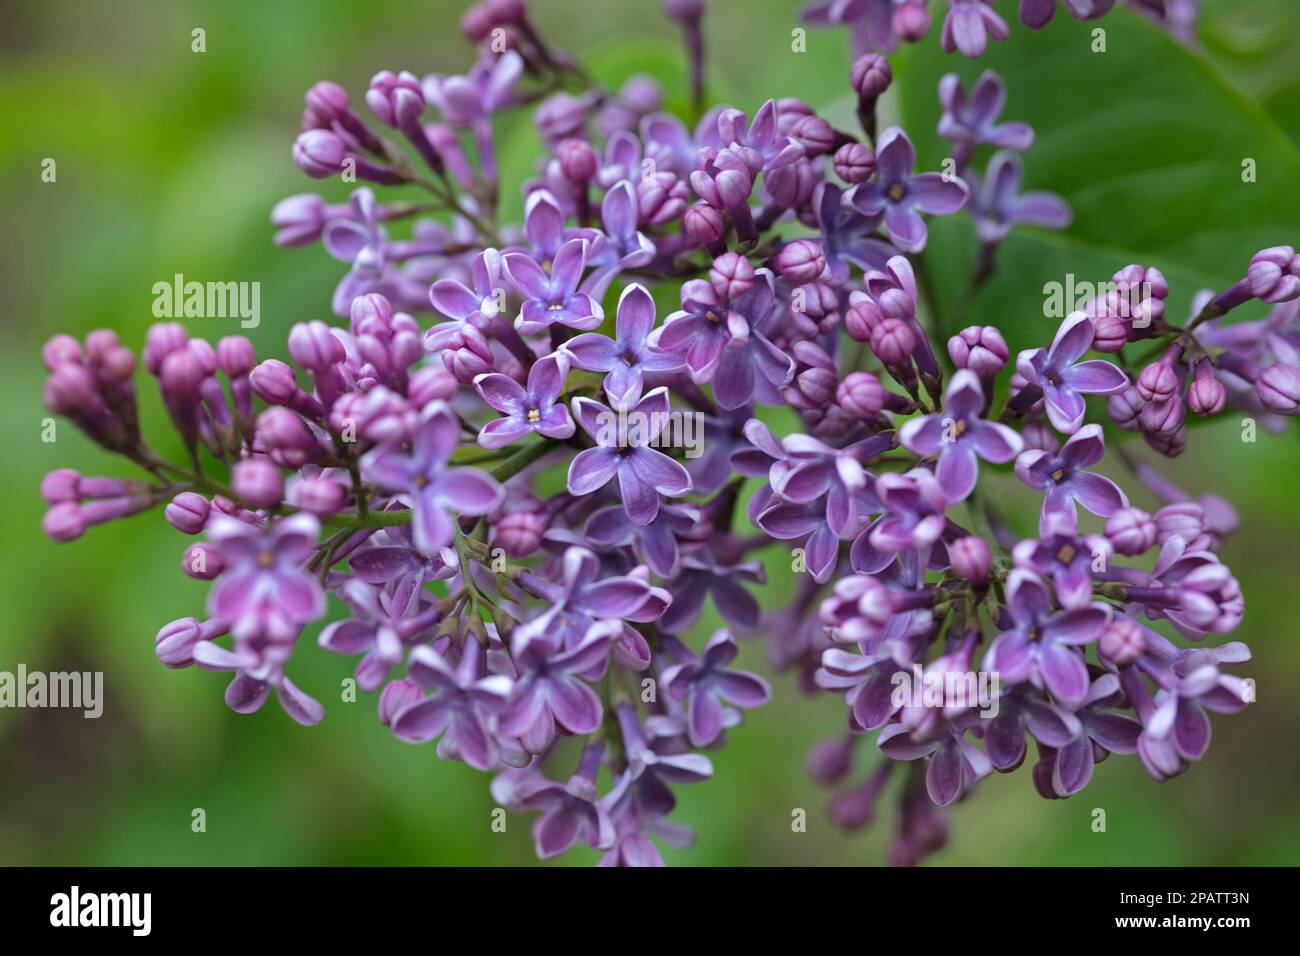 Nahaufnahme der violetten Blüten des Fliederbaumes, Syringa vulgaris, die im Frühsommer auf einem natürlichen grünen Blatthintergrund blühen Stockfoto